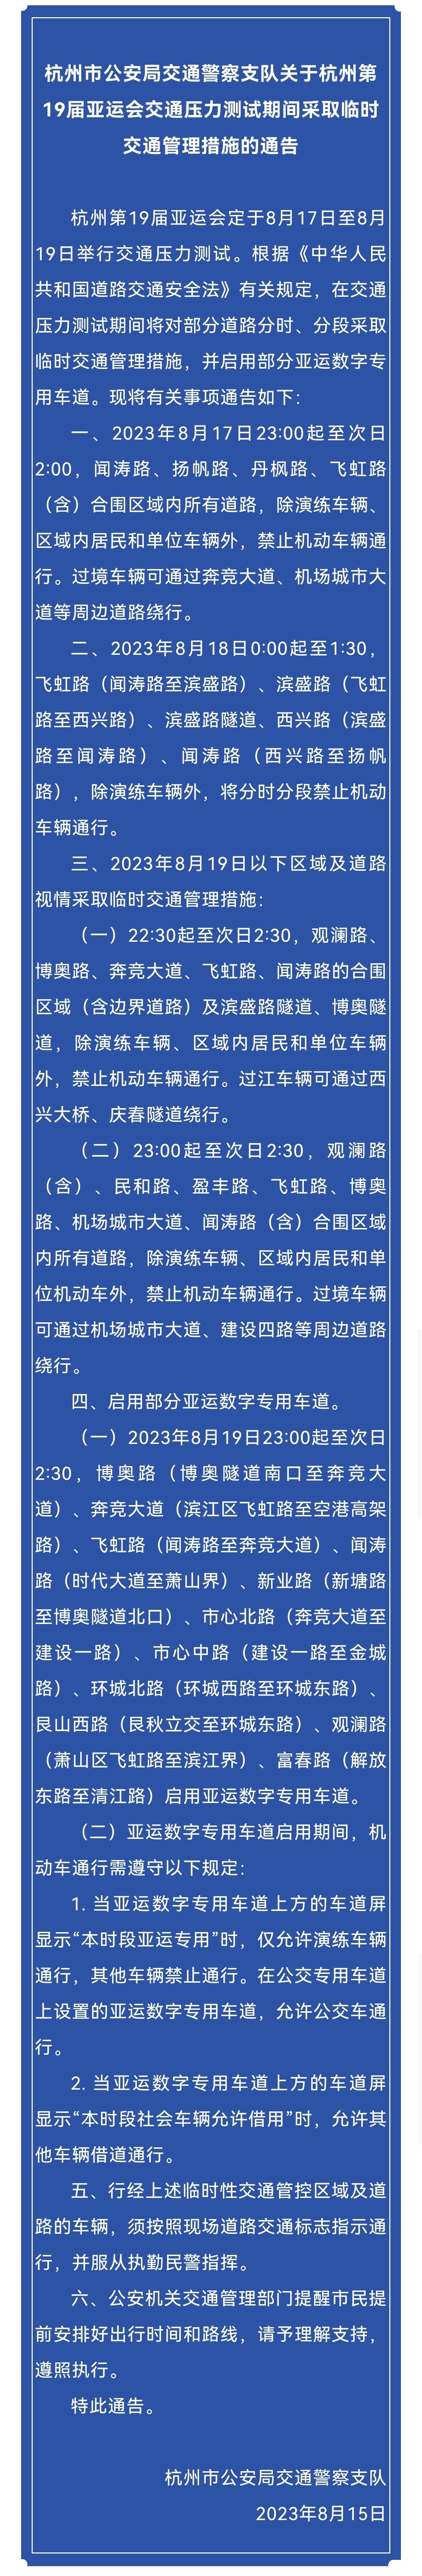 亚运会交通压力测试明日开始 杭州将对这些道路采取临时管理措施